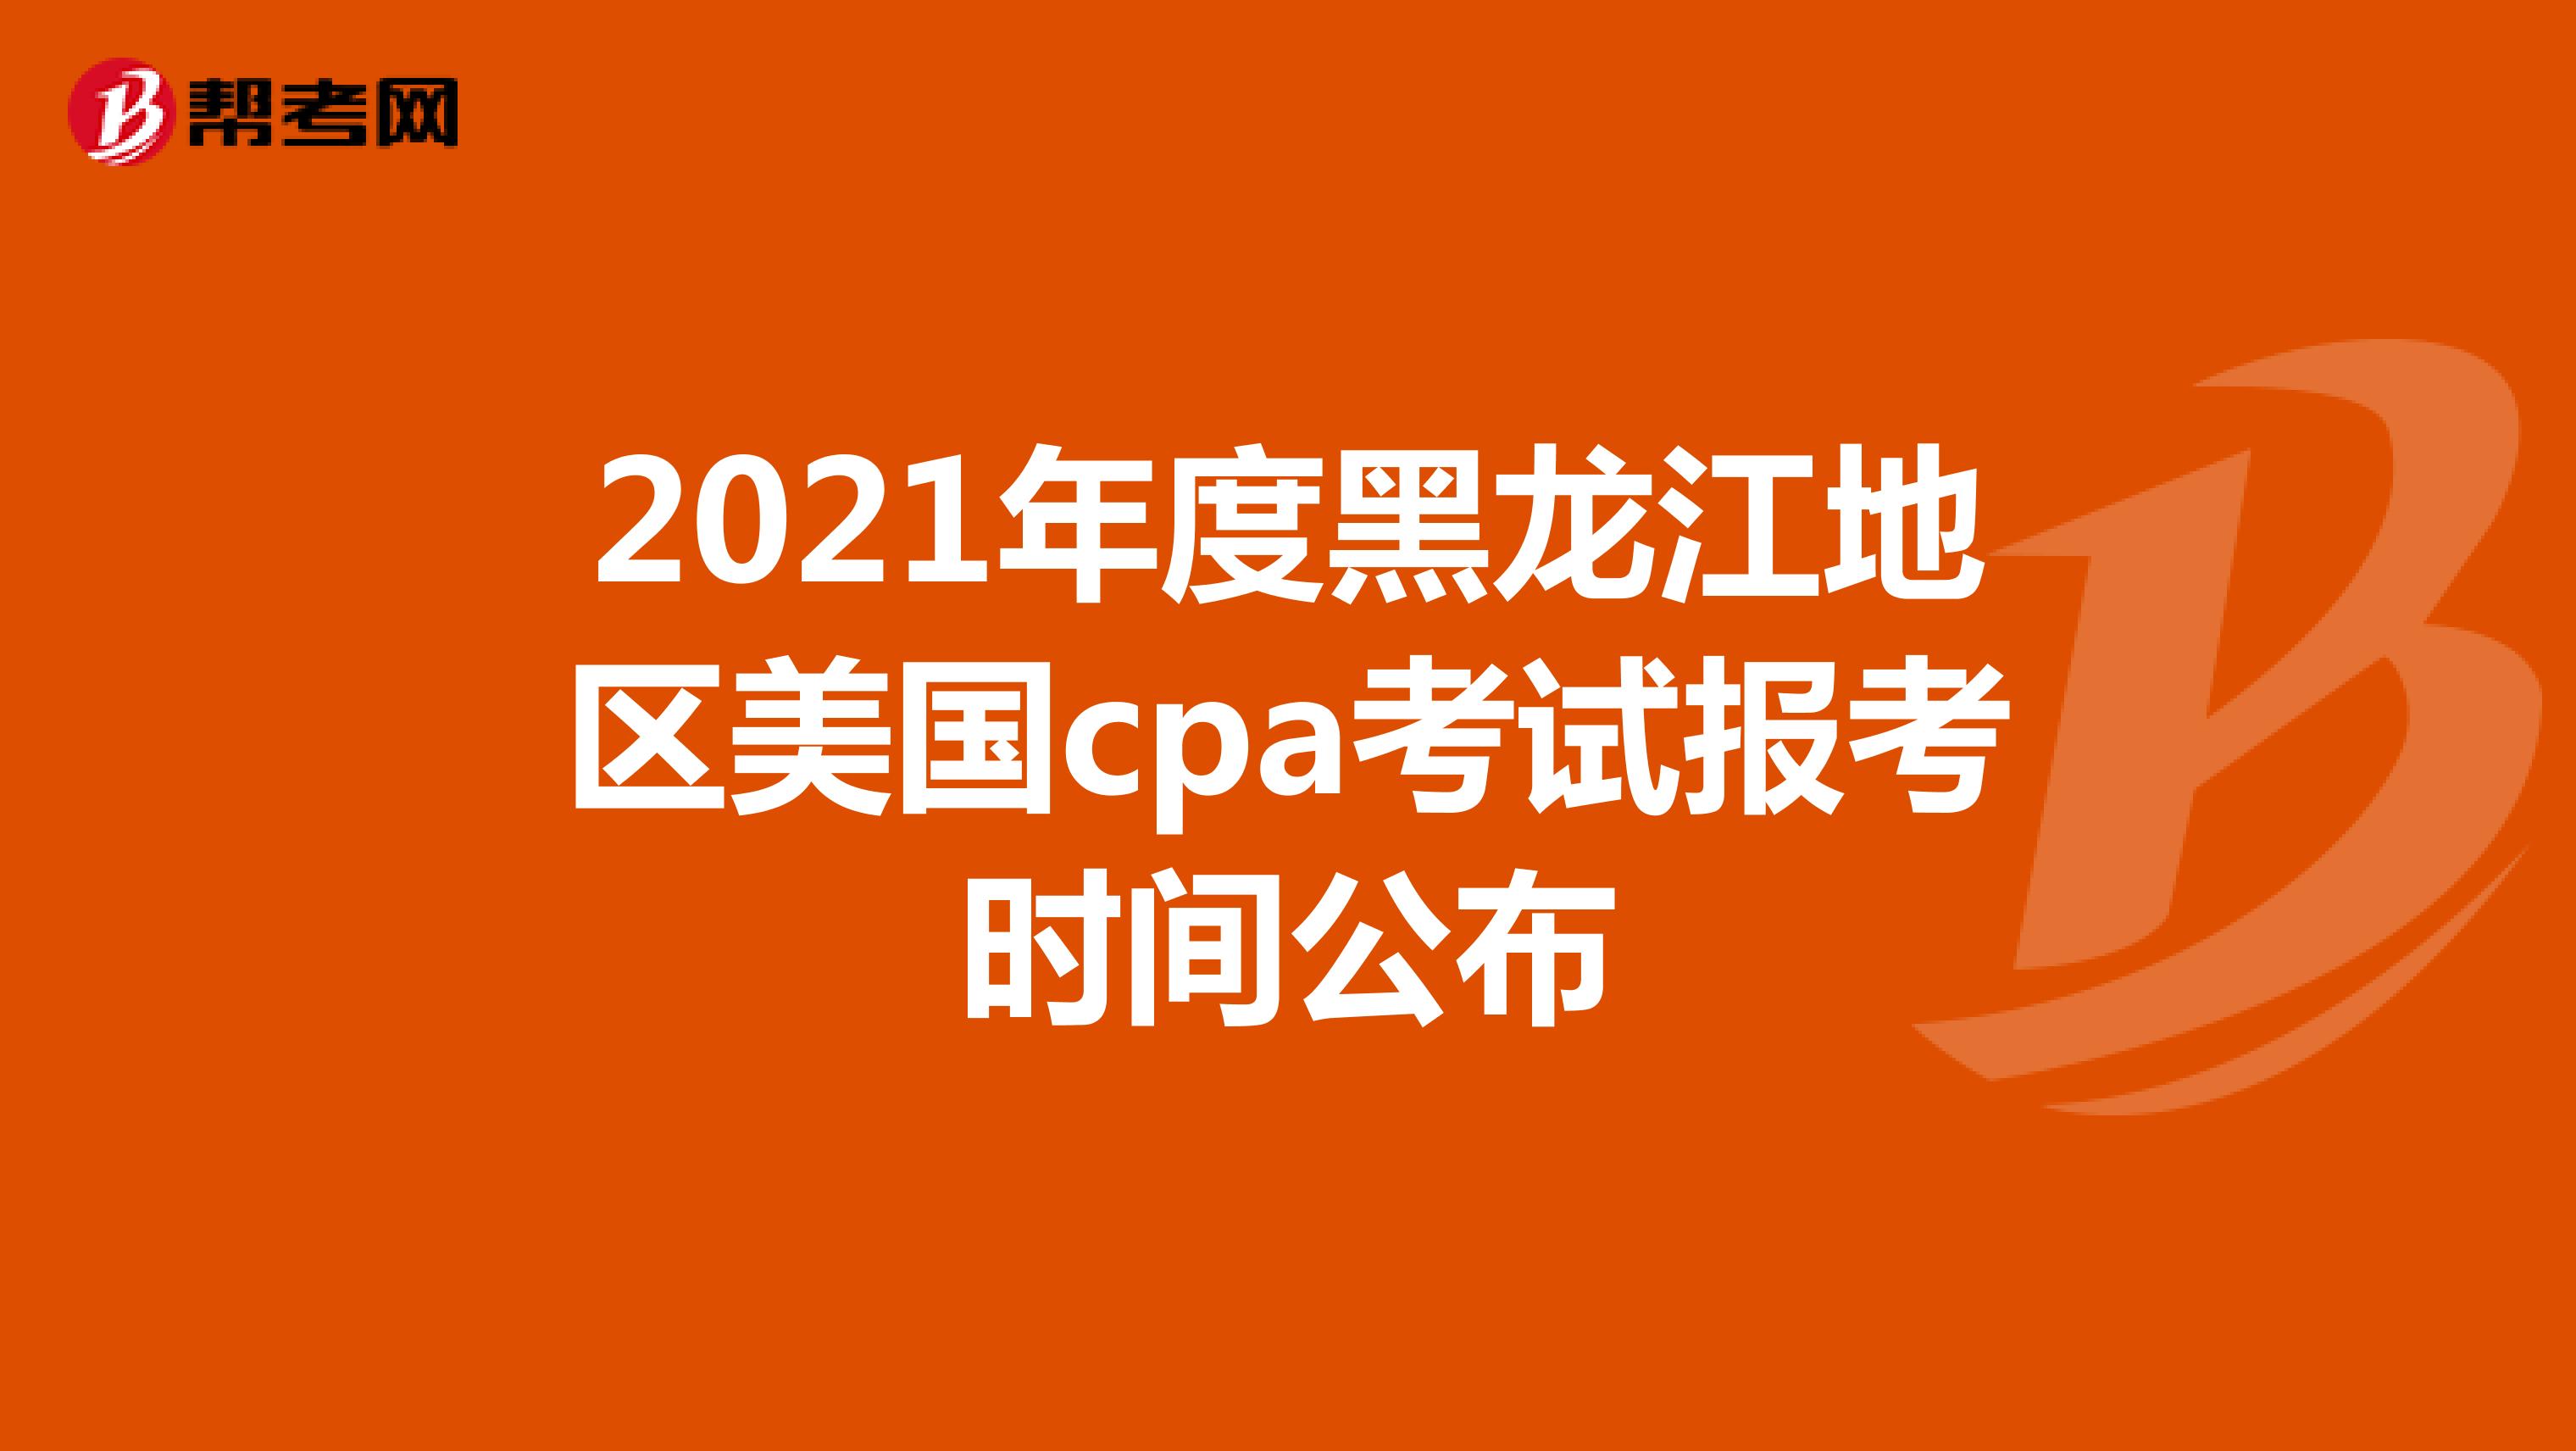 2021年度黑龙江地区美国cpa考试报考时间公布